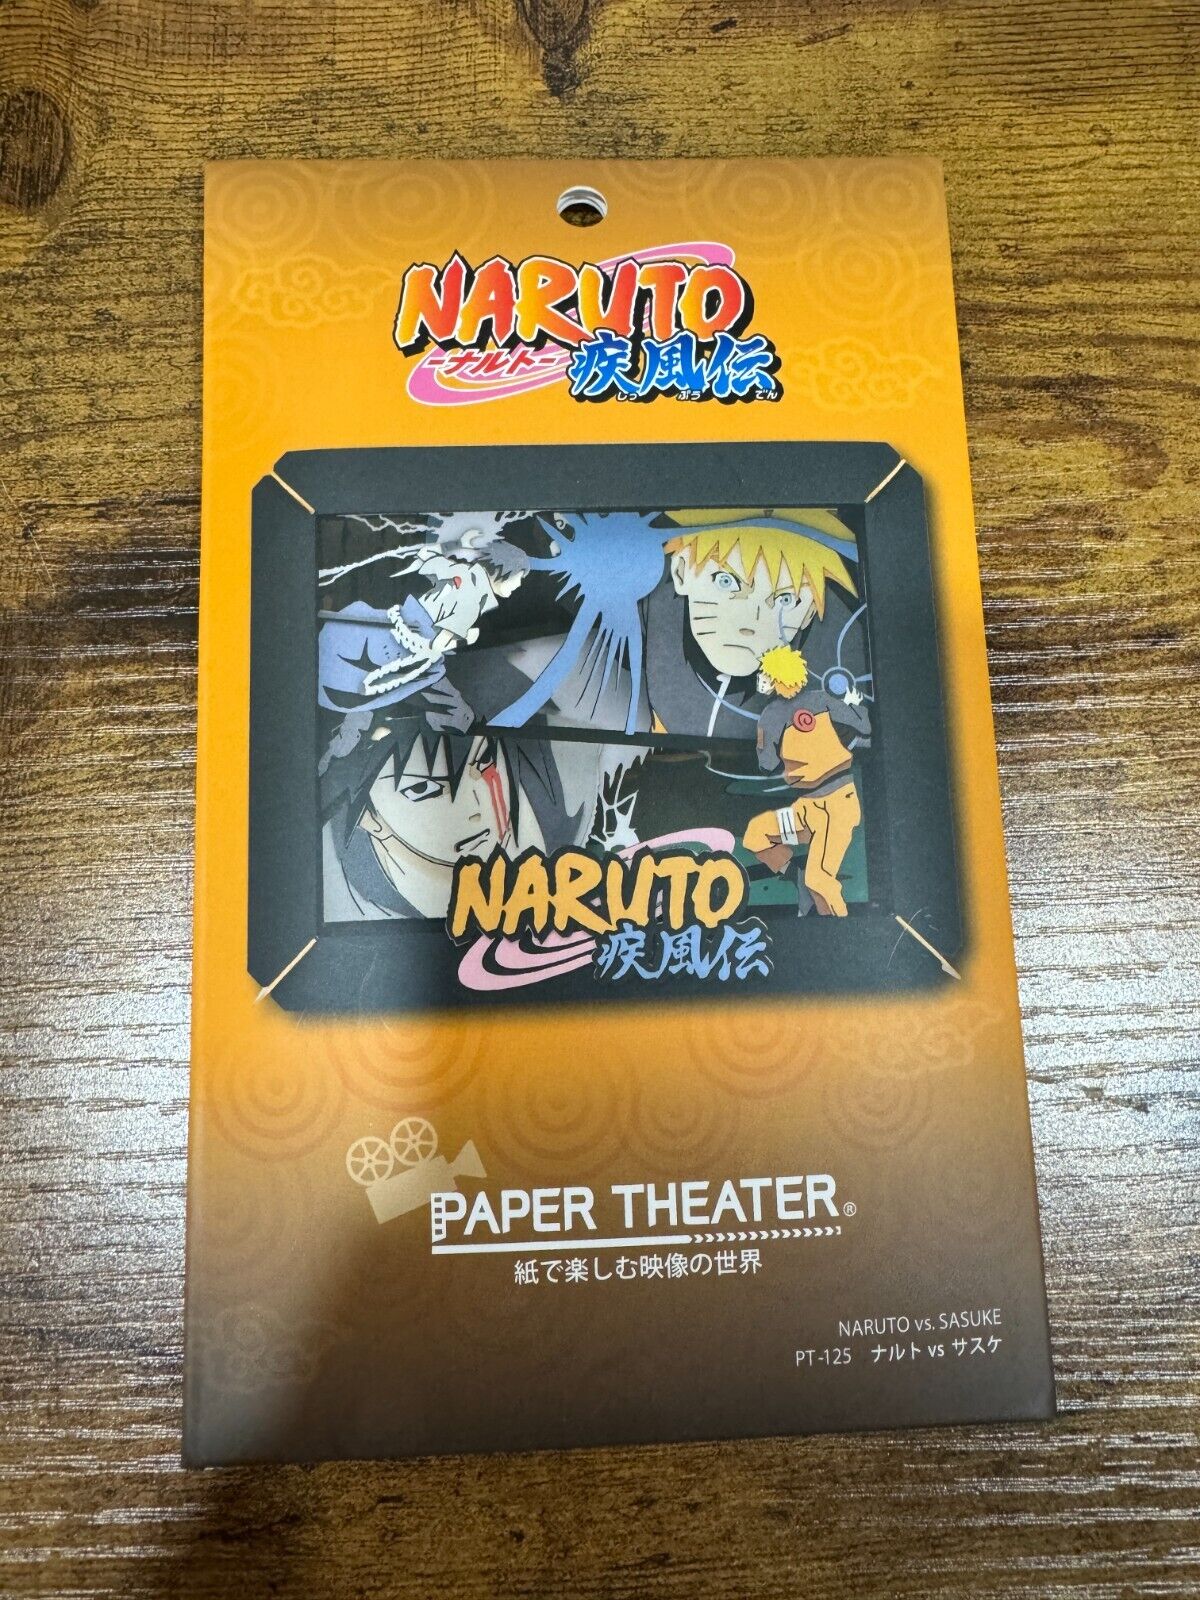 Naruto Shippuden Paper Theater - Naruto Vs Sasuke 3D Shadow Box - SHIPS FROM USA